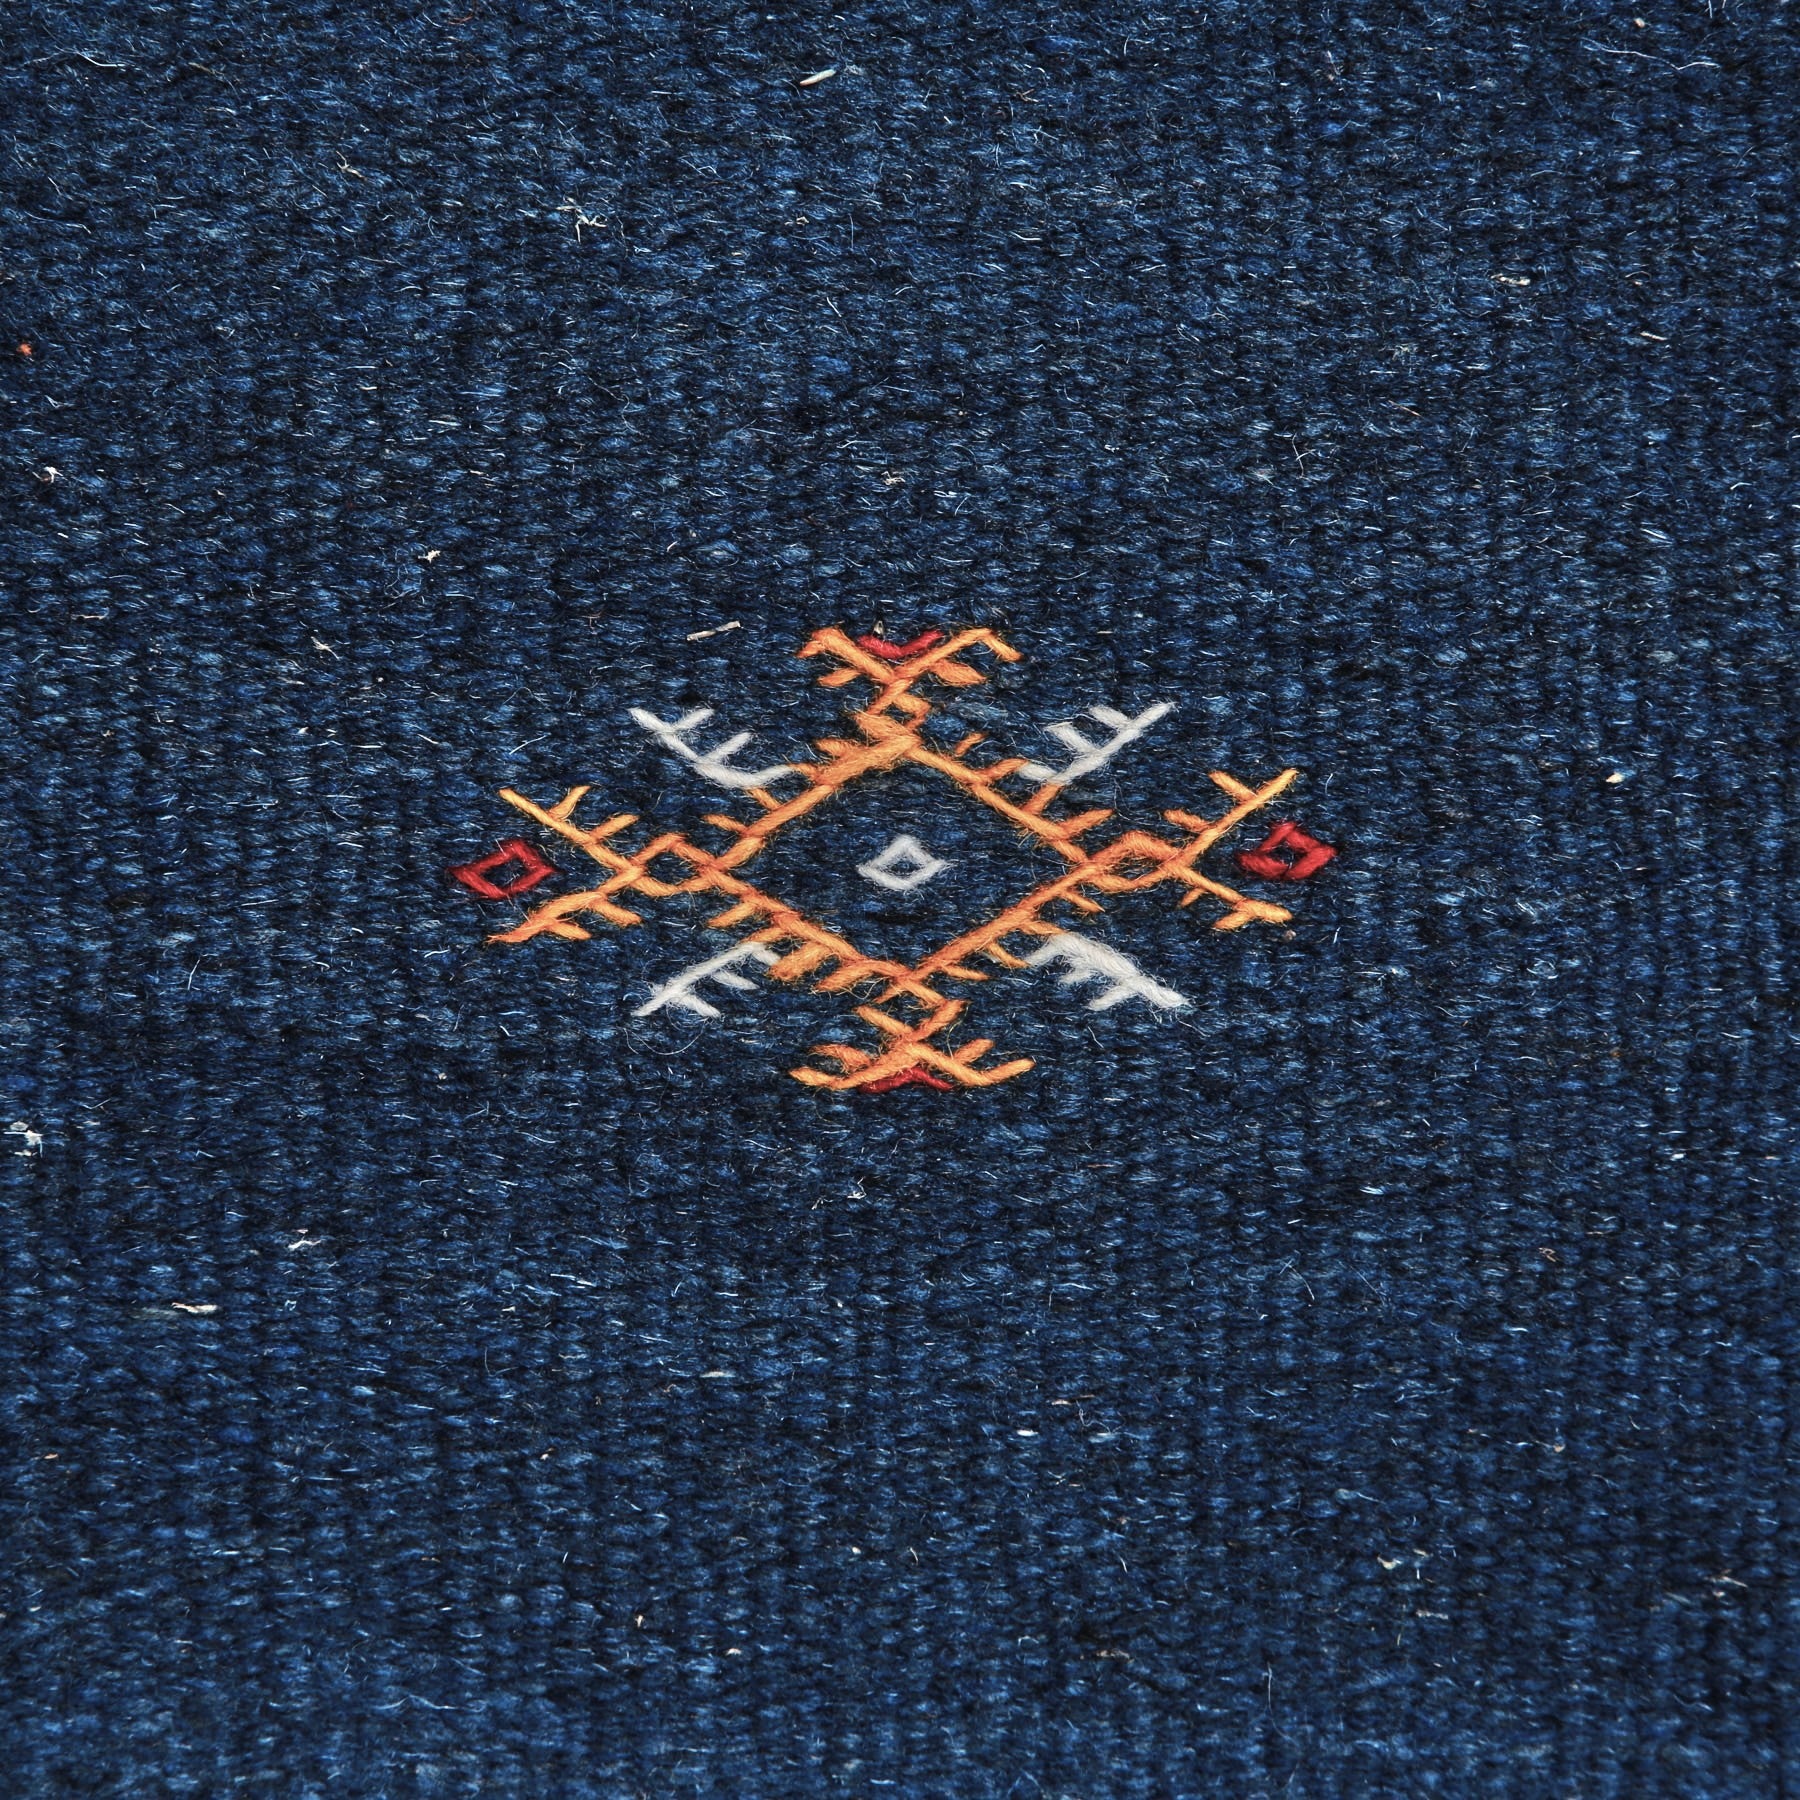 dettaglio di un simbolo amazigh ricamato in arancione bianco e rosso su un Tappeto marocchino akhnif a tessitura piatta blu